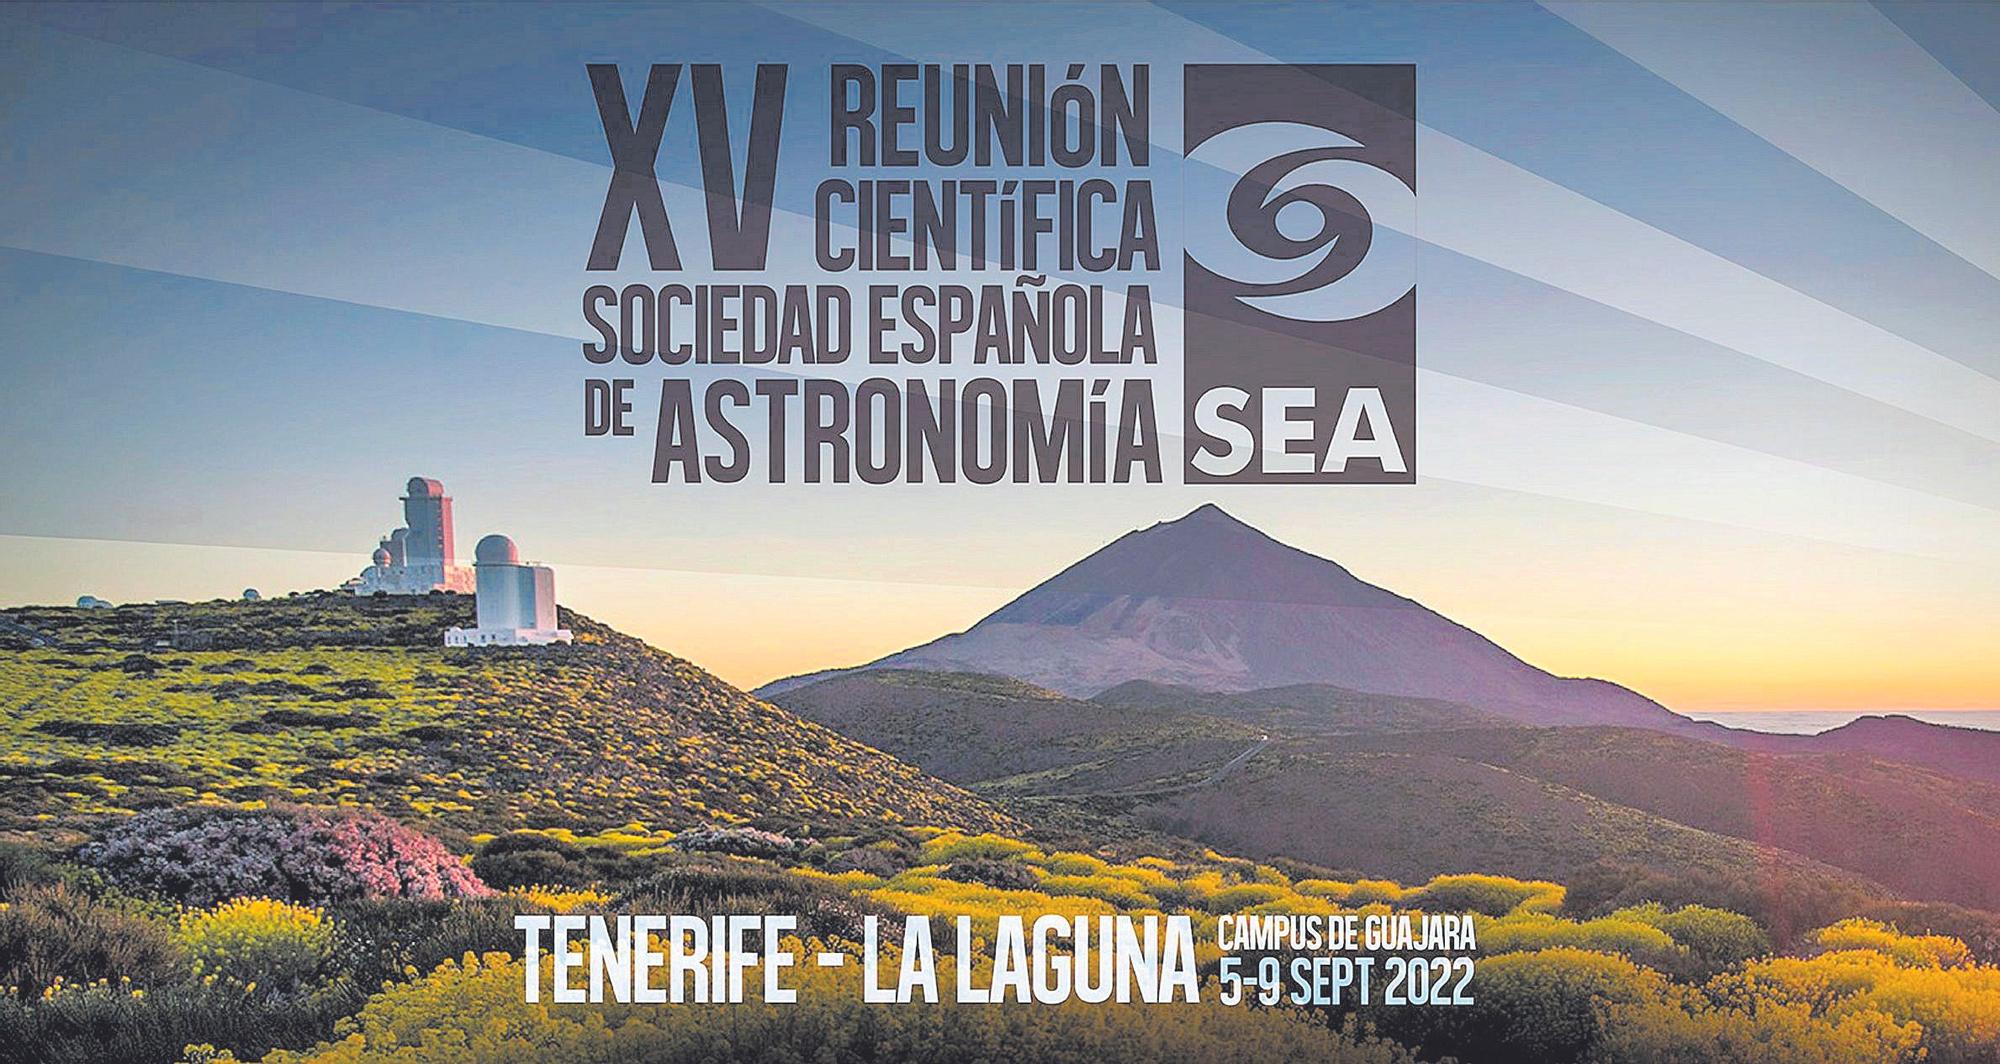 Cartel de la XV Reunión Científica de la Sociedad Española de Astronomía que se celebra en Tenerife esta semana.